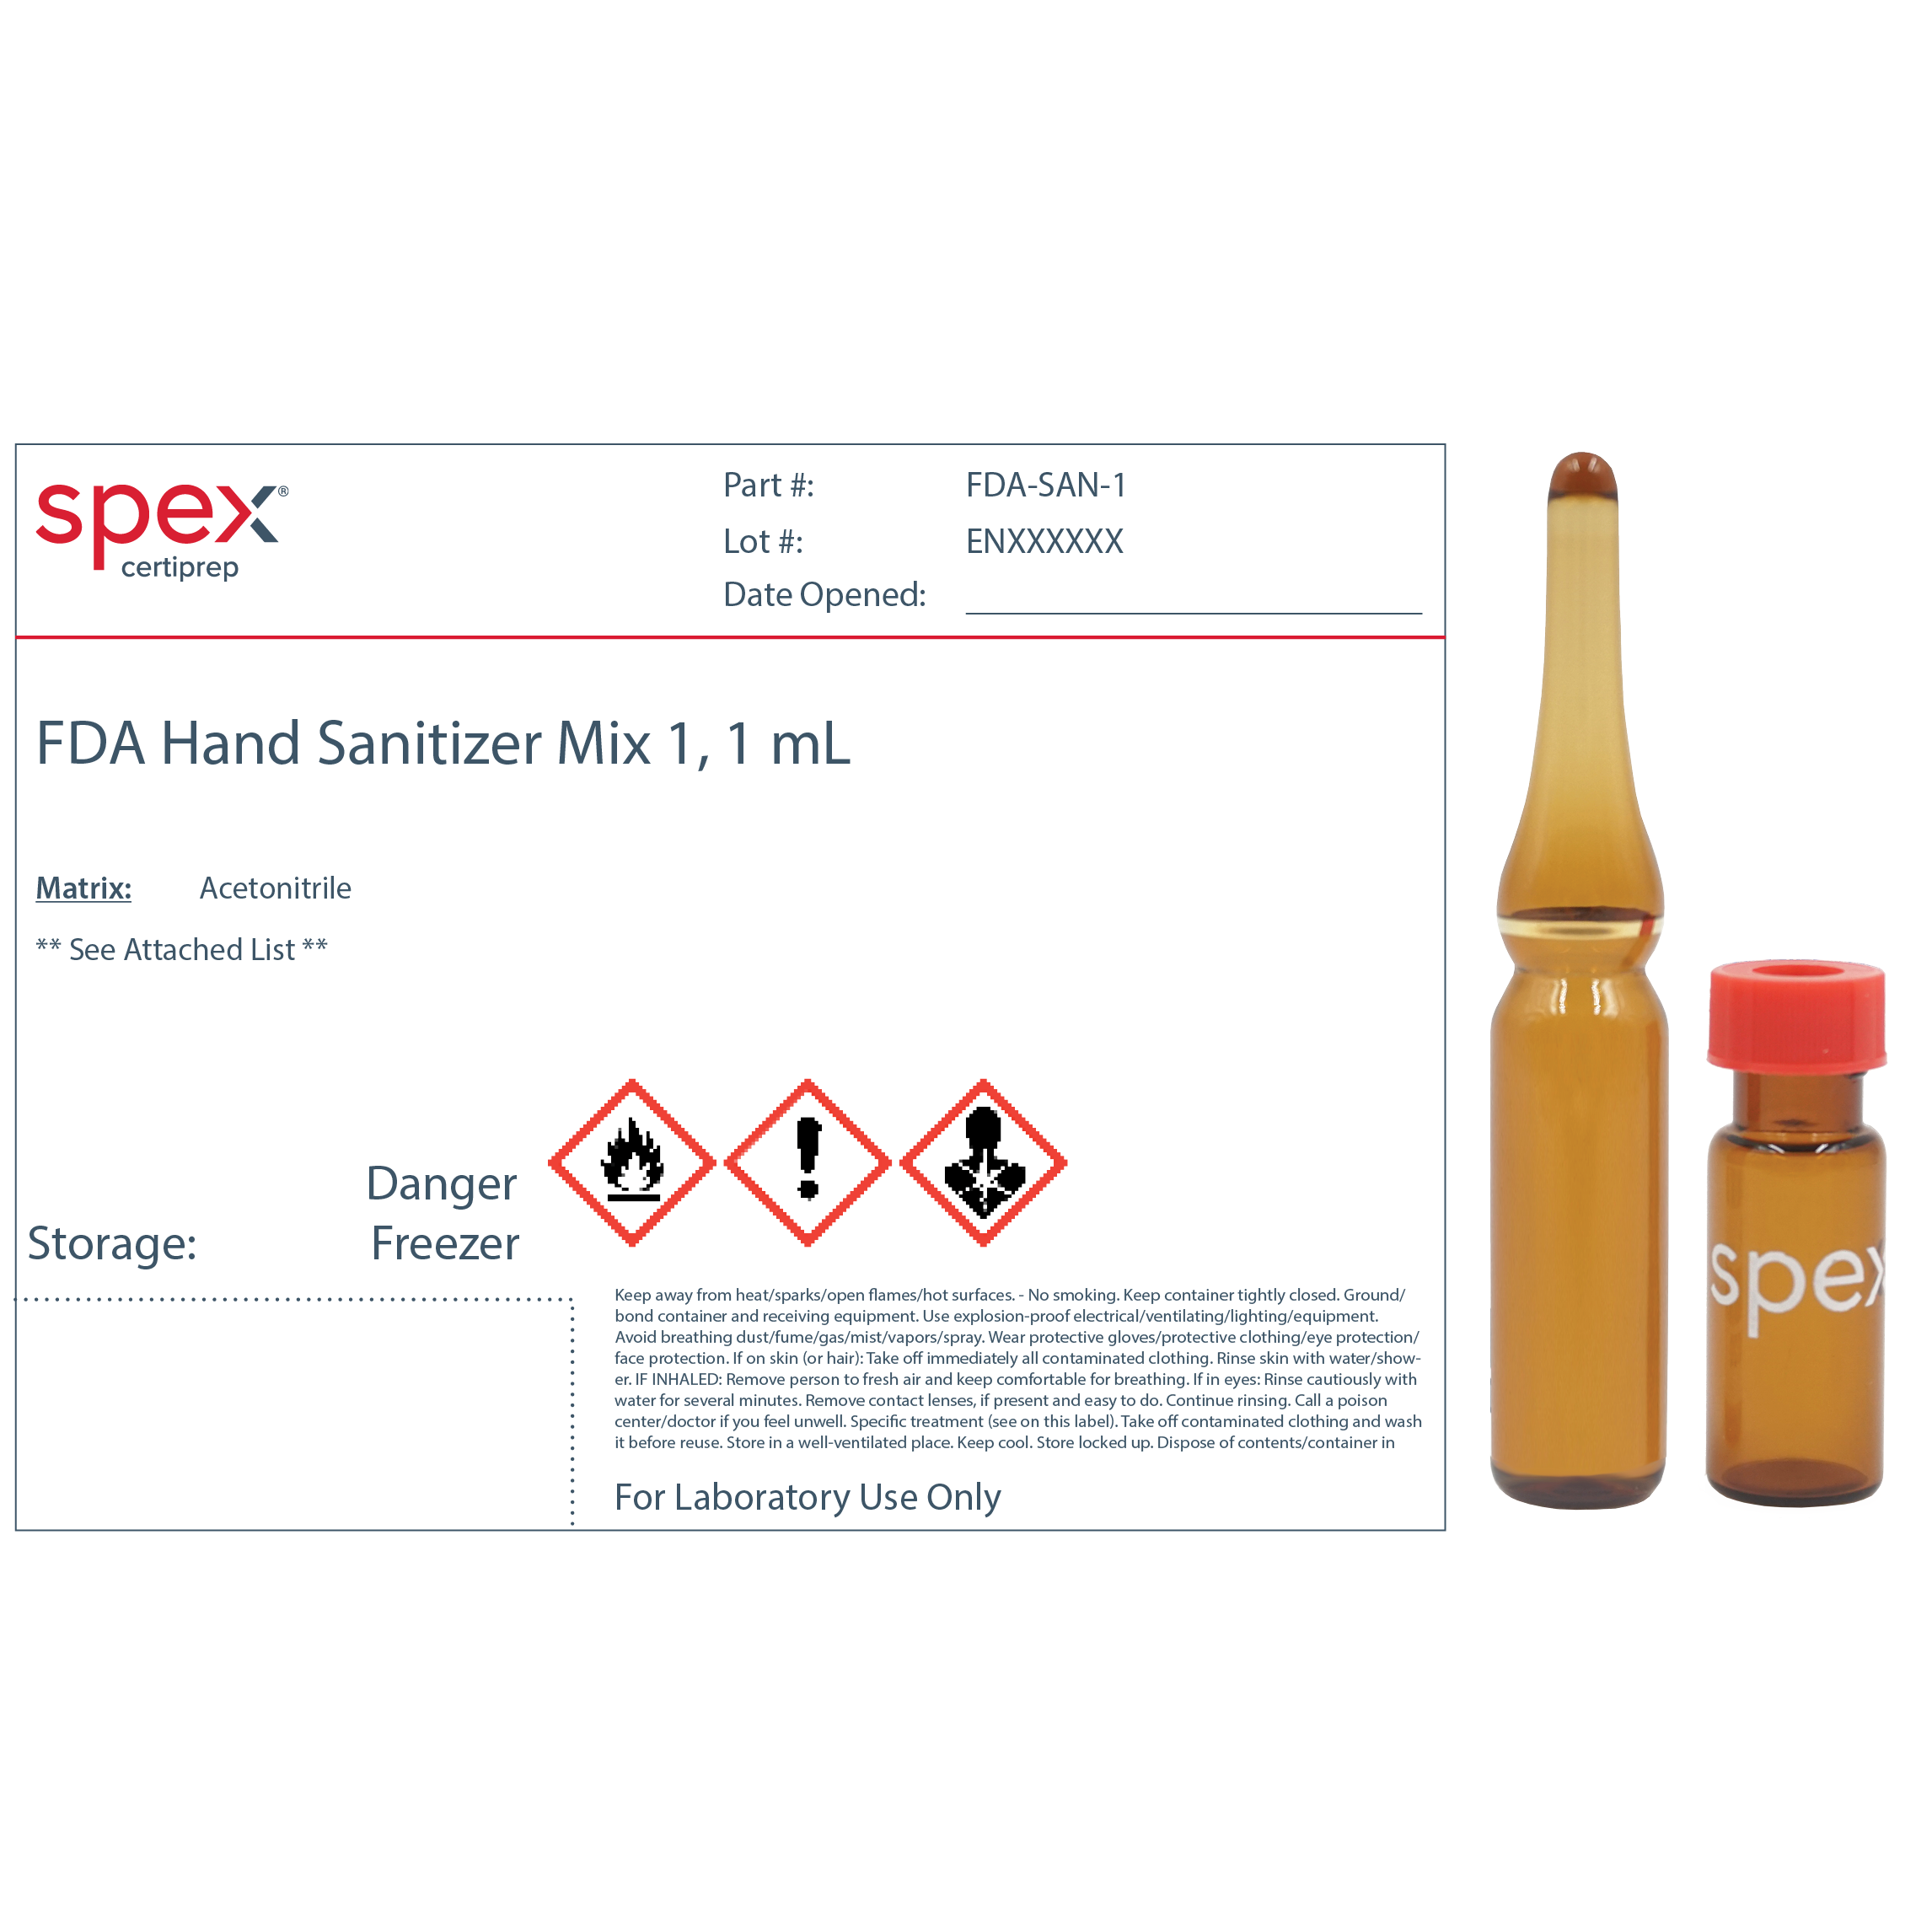 FDA-SAN-1